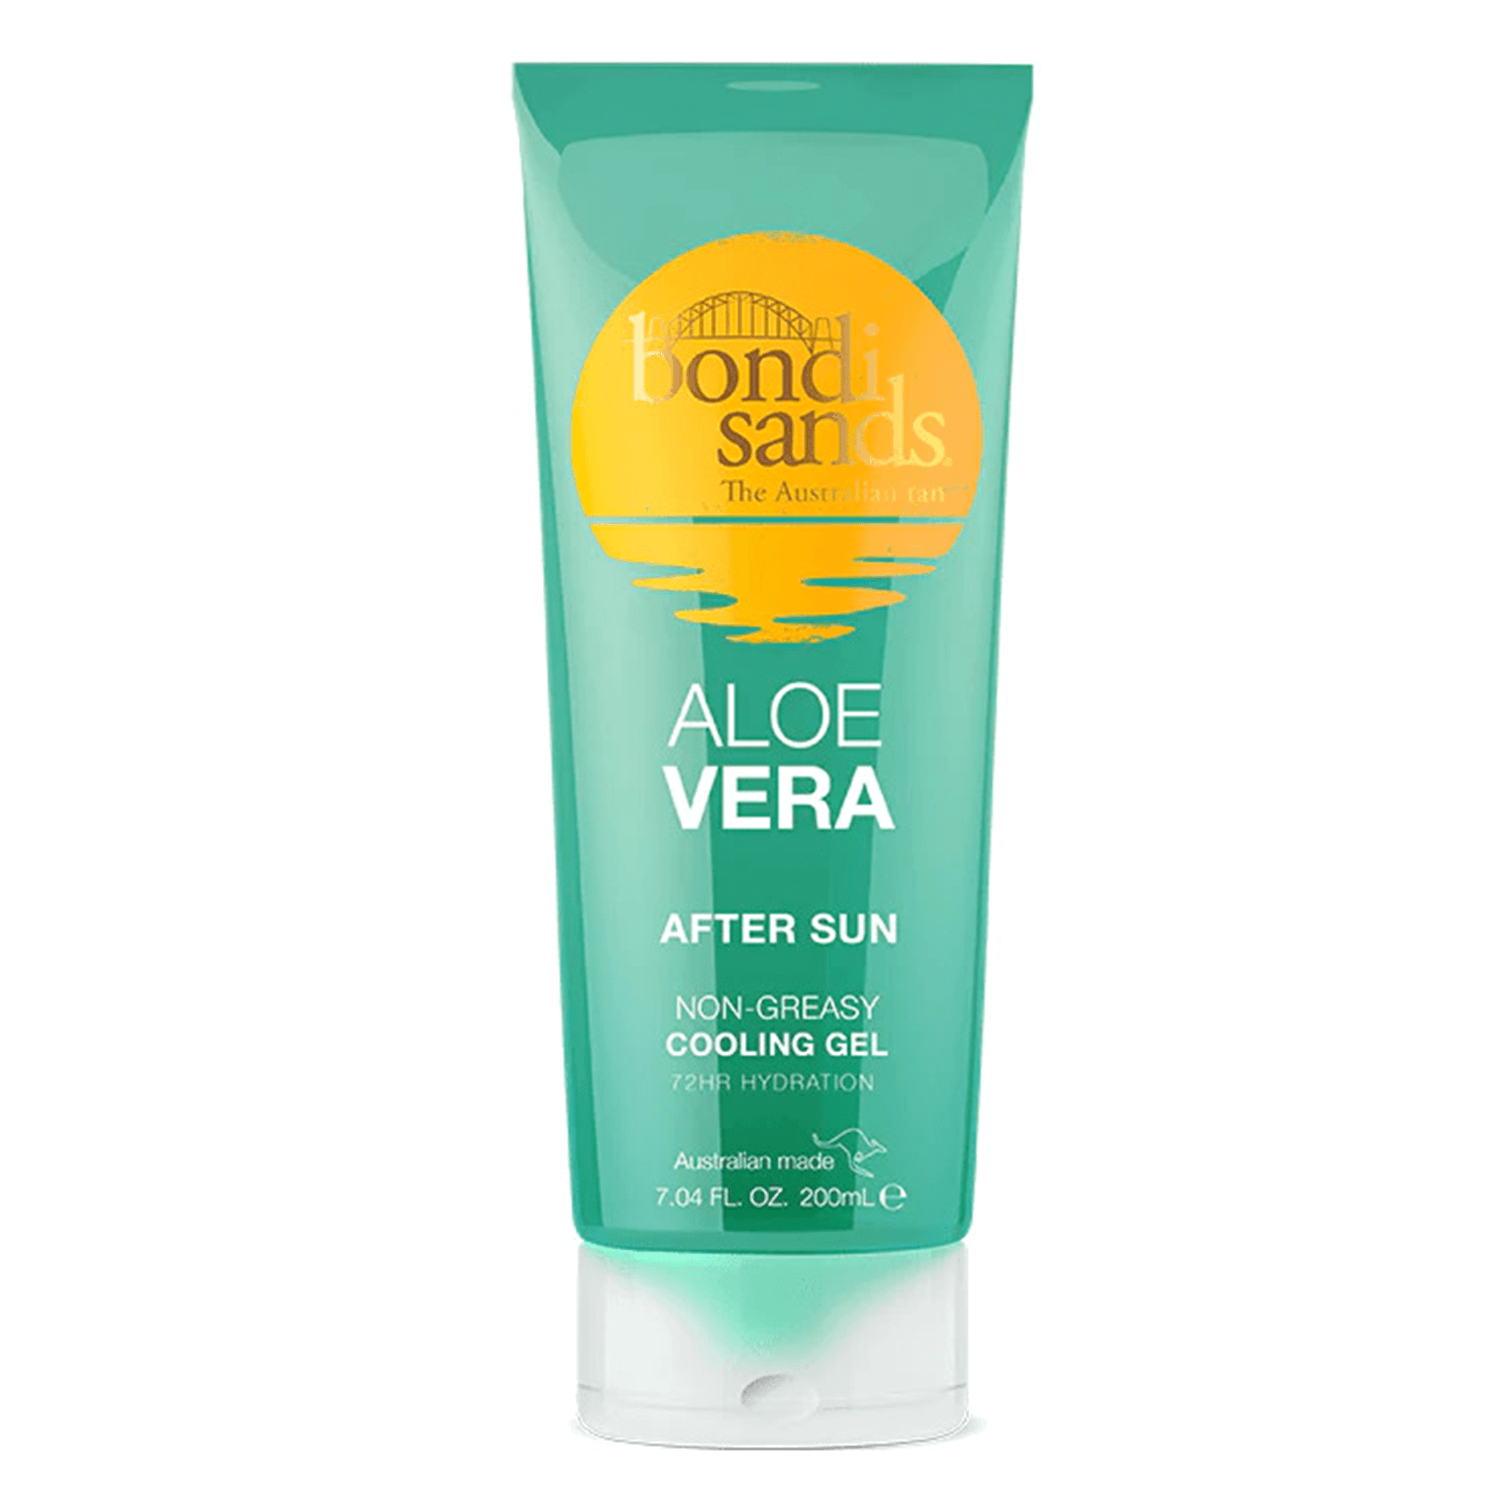 Product image from Aftersun - Bondi Sands Aloe Vera Aftersun Gel